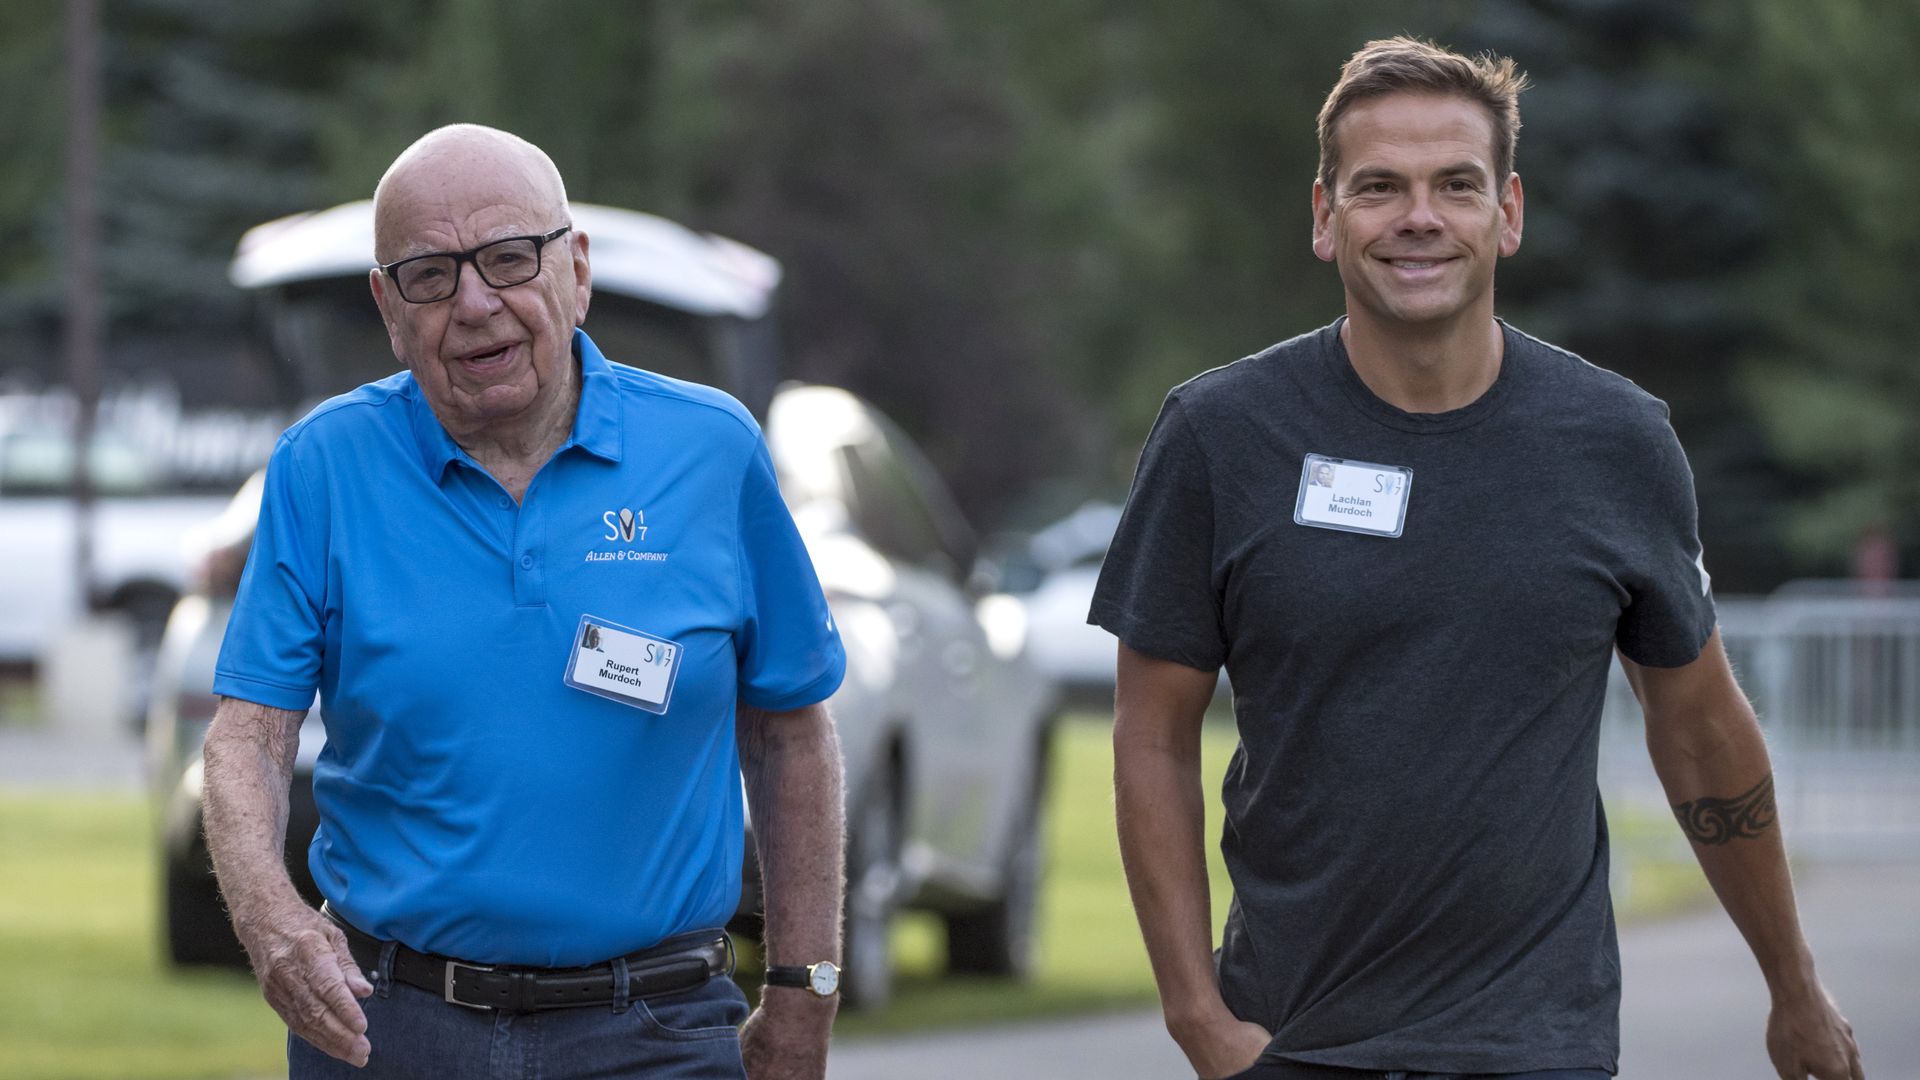 Rupert Murdoch and his son Lachlan Murdoch walking side by side.